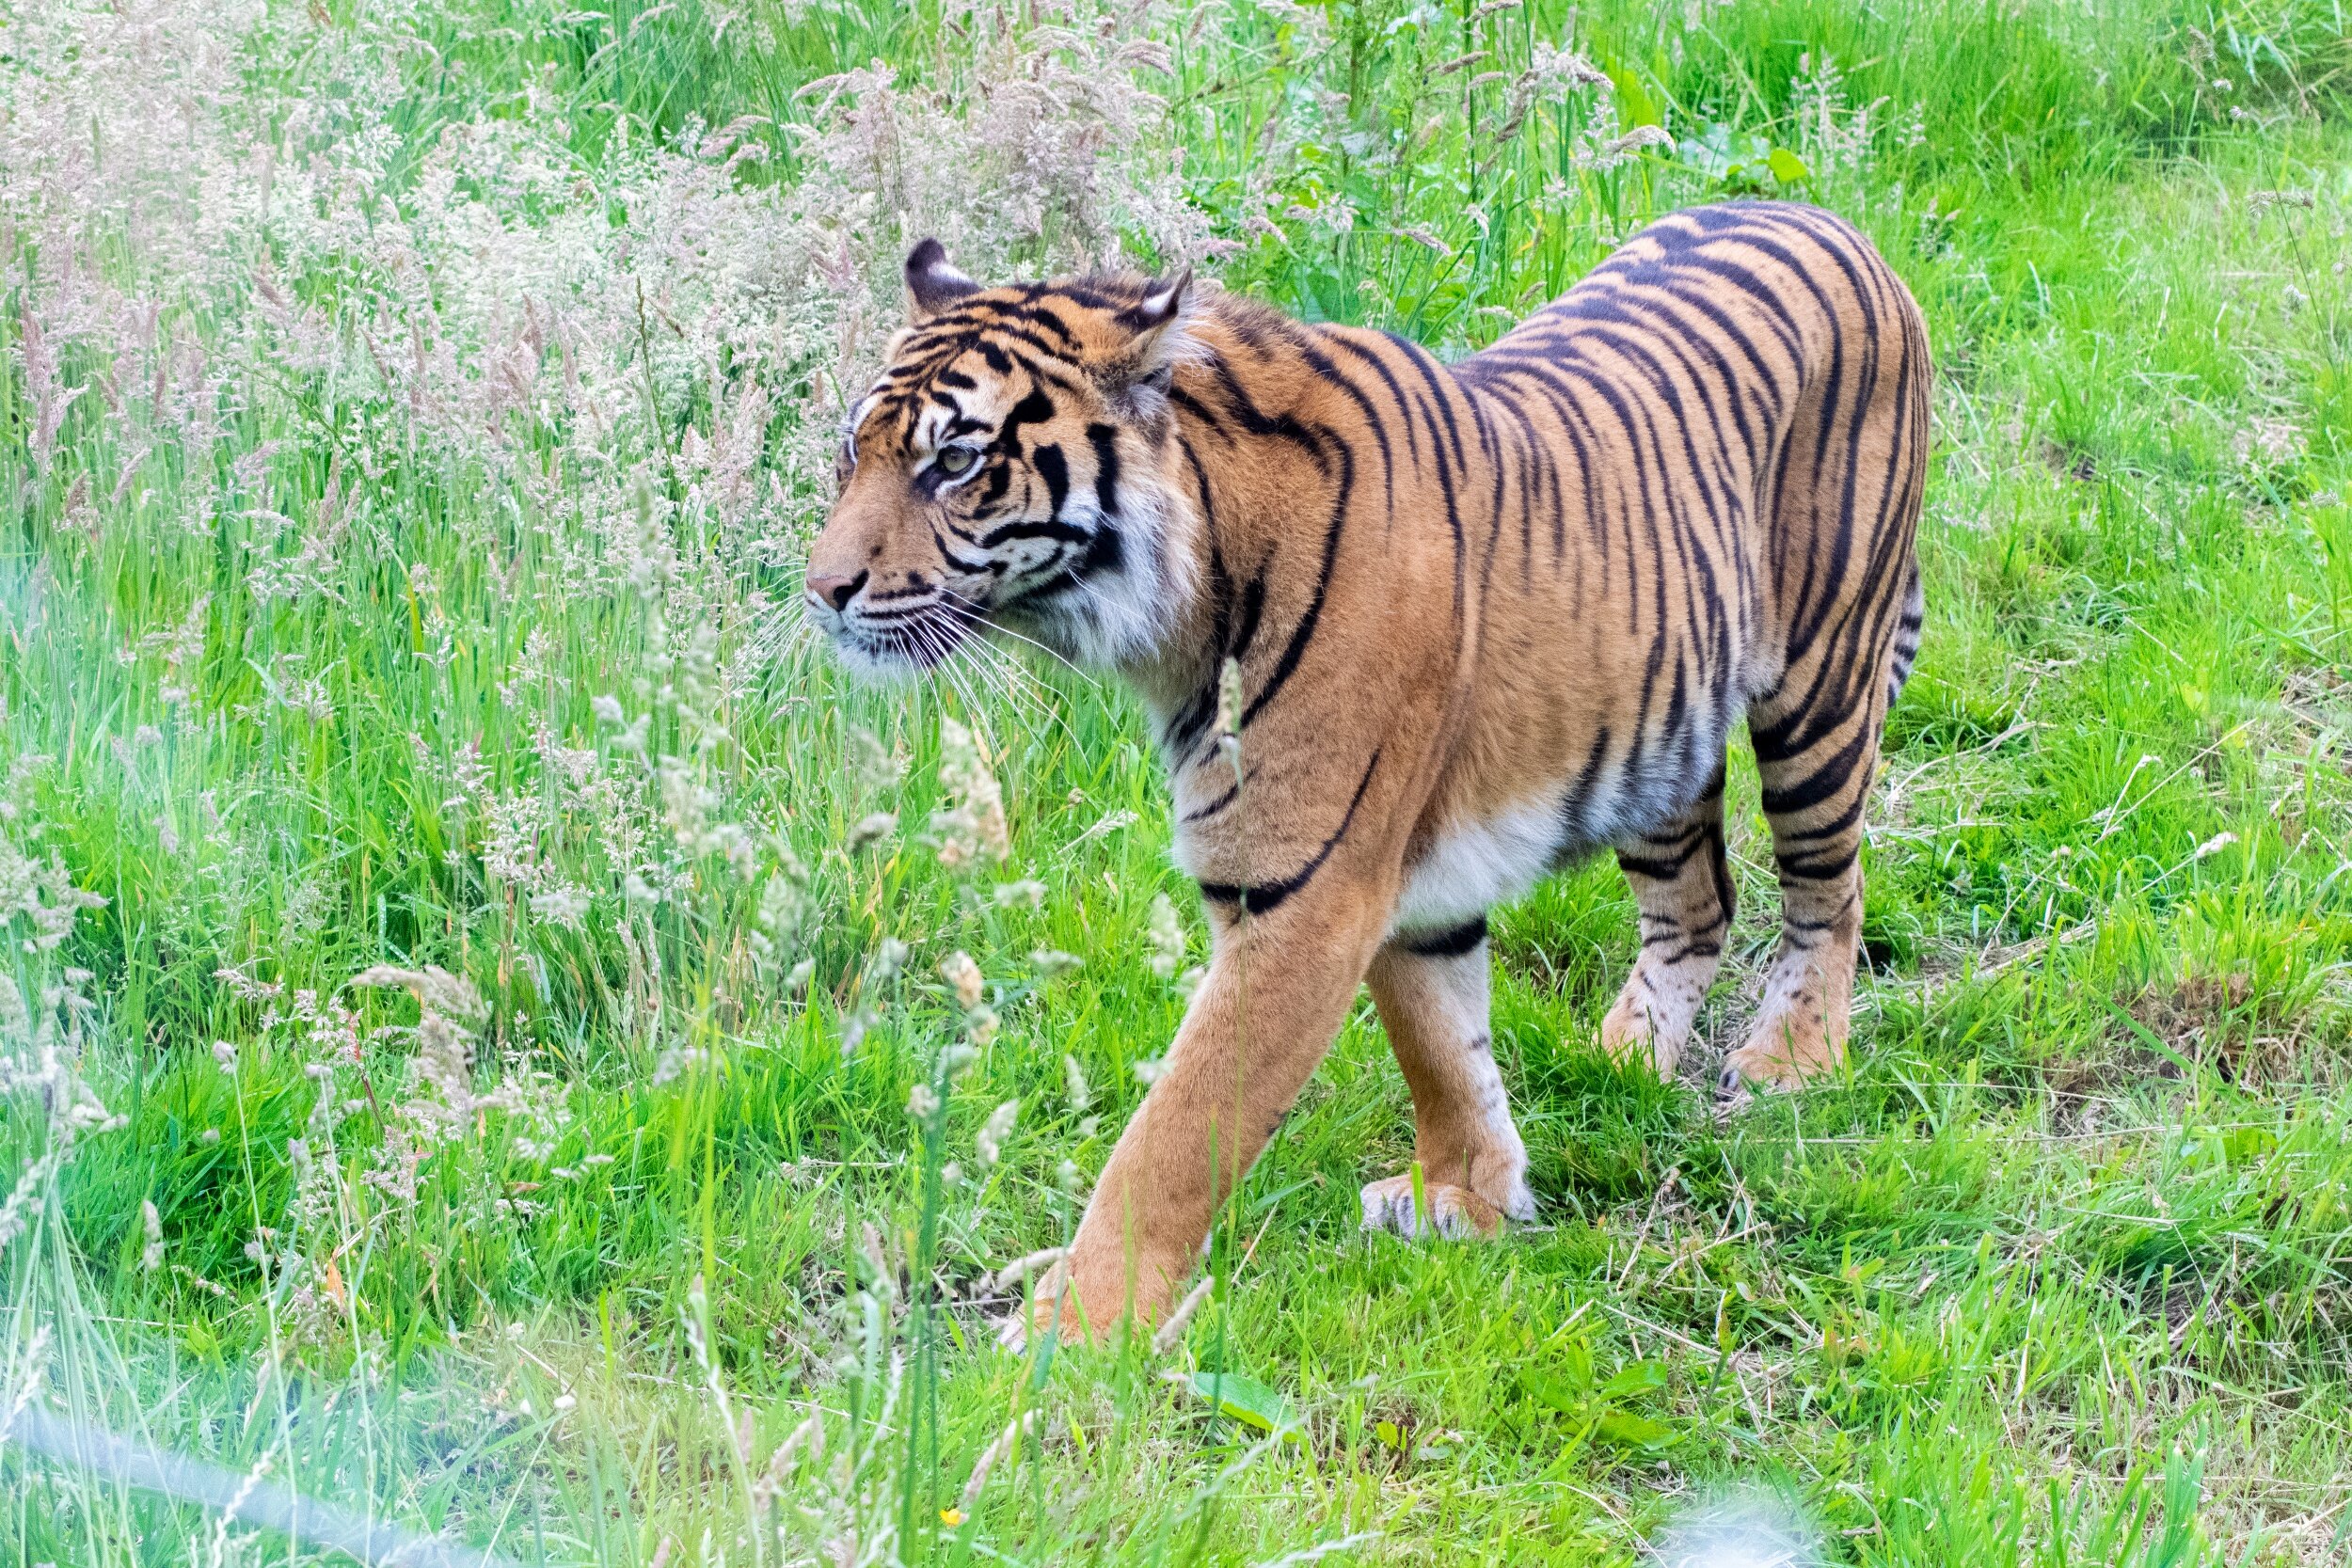 processed_Tiger at Safari Zoo.jpg